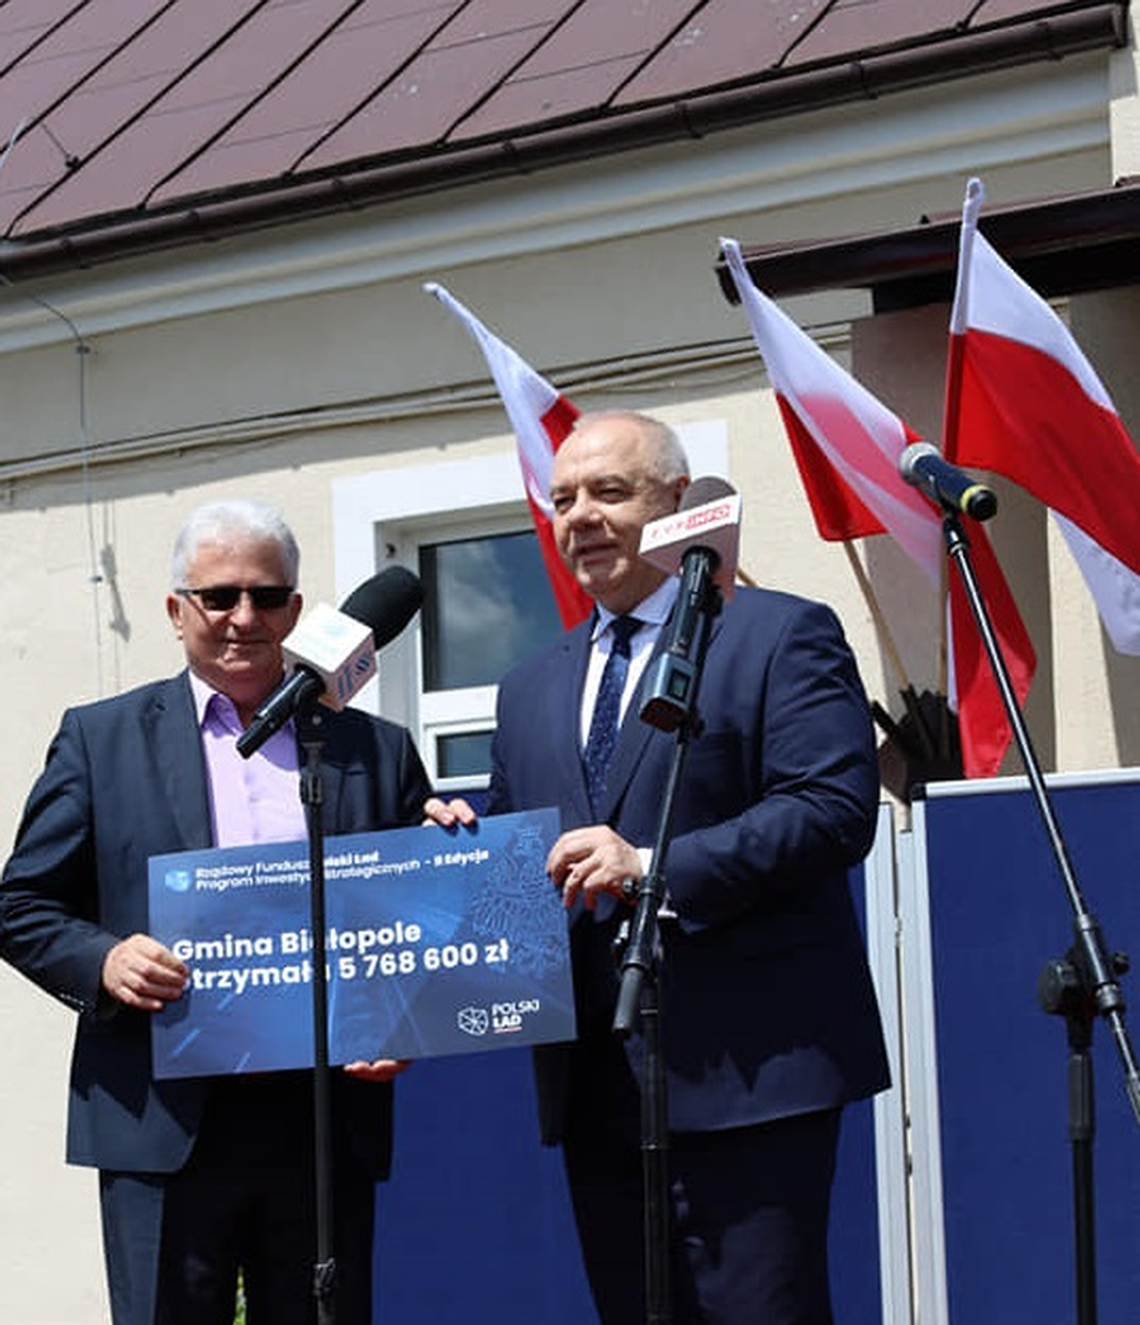 Białopole dostało 5 768 000 zł. Jakie inwestycje planuje gmina?